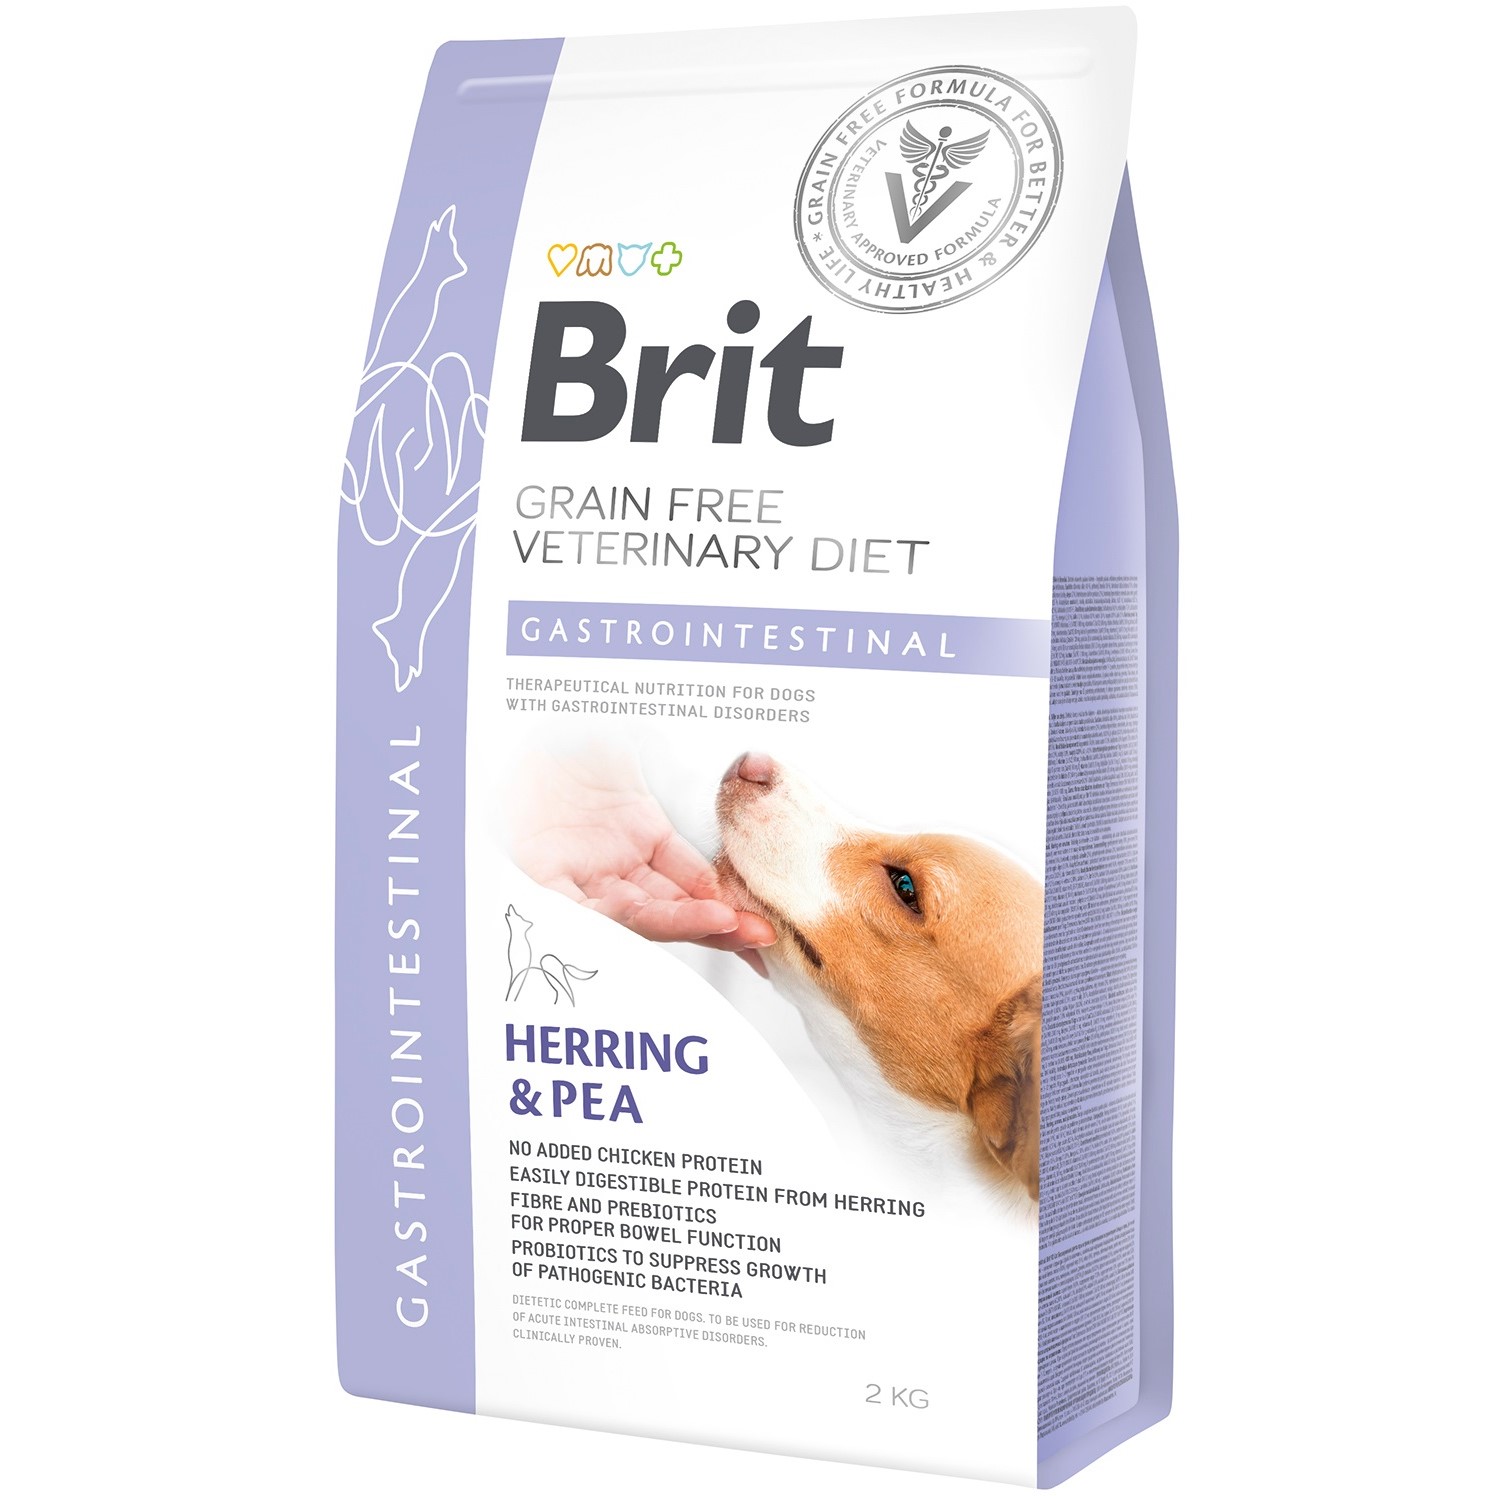 Сухий корм для будь-якого віку собак Brit VetDiets Grain Free Gastrointestinal при порушеннях травлення з оселедцем, лососем та горохом 2 кг - фото 1